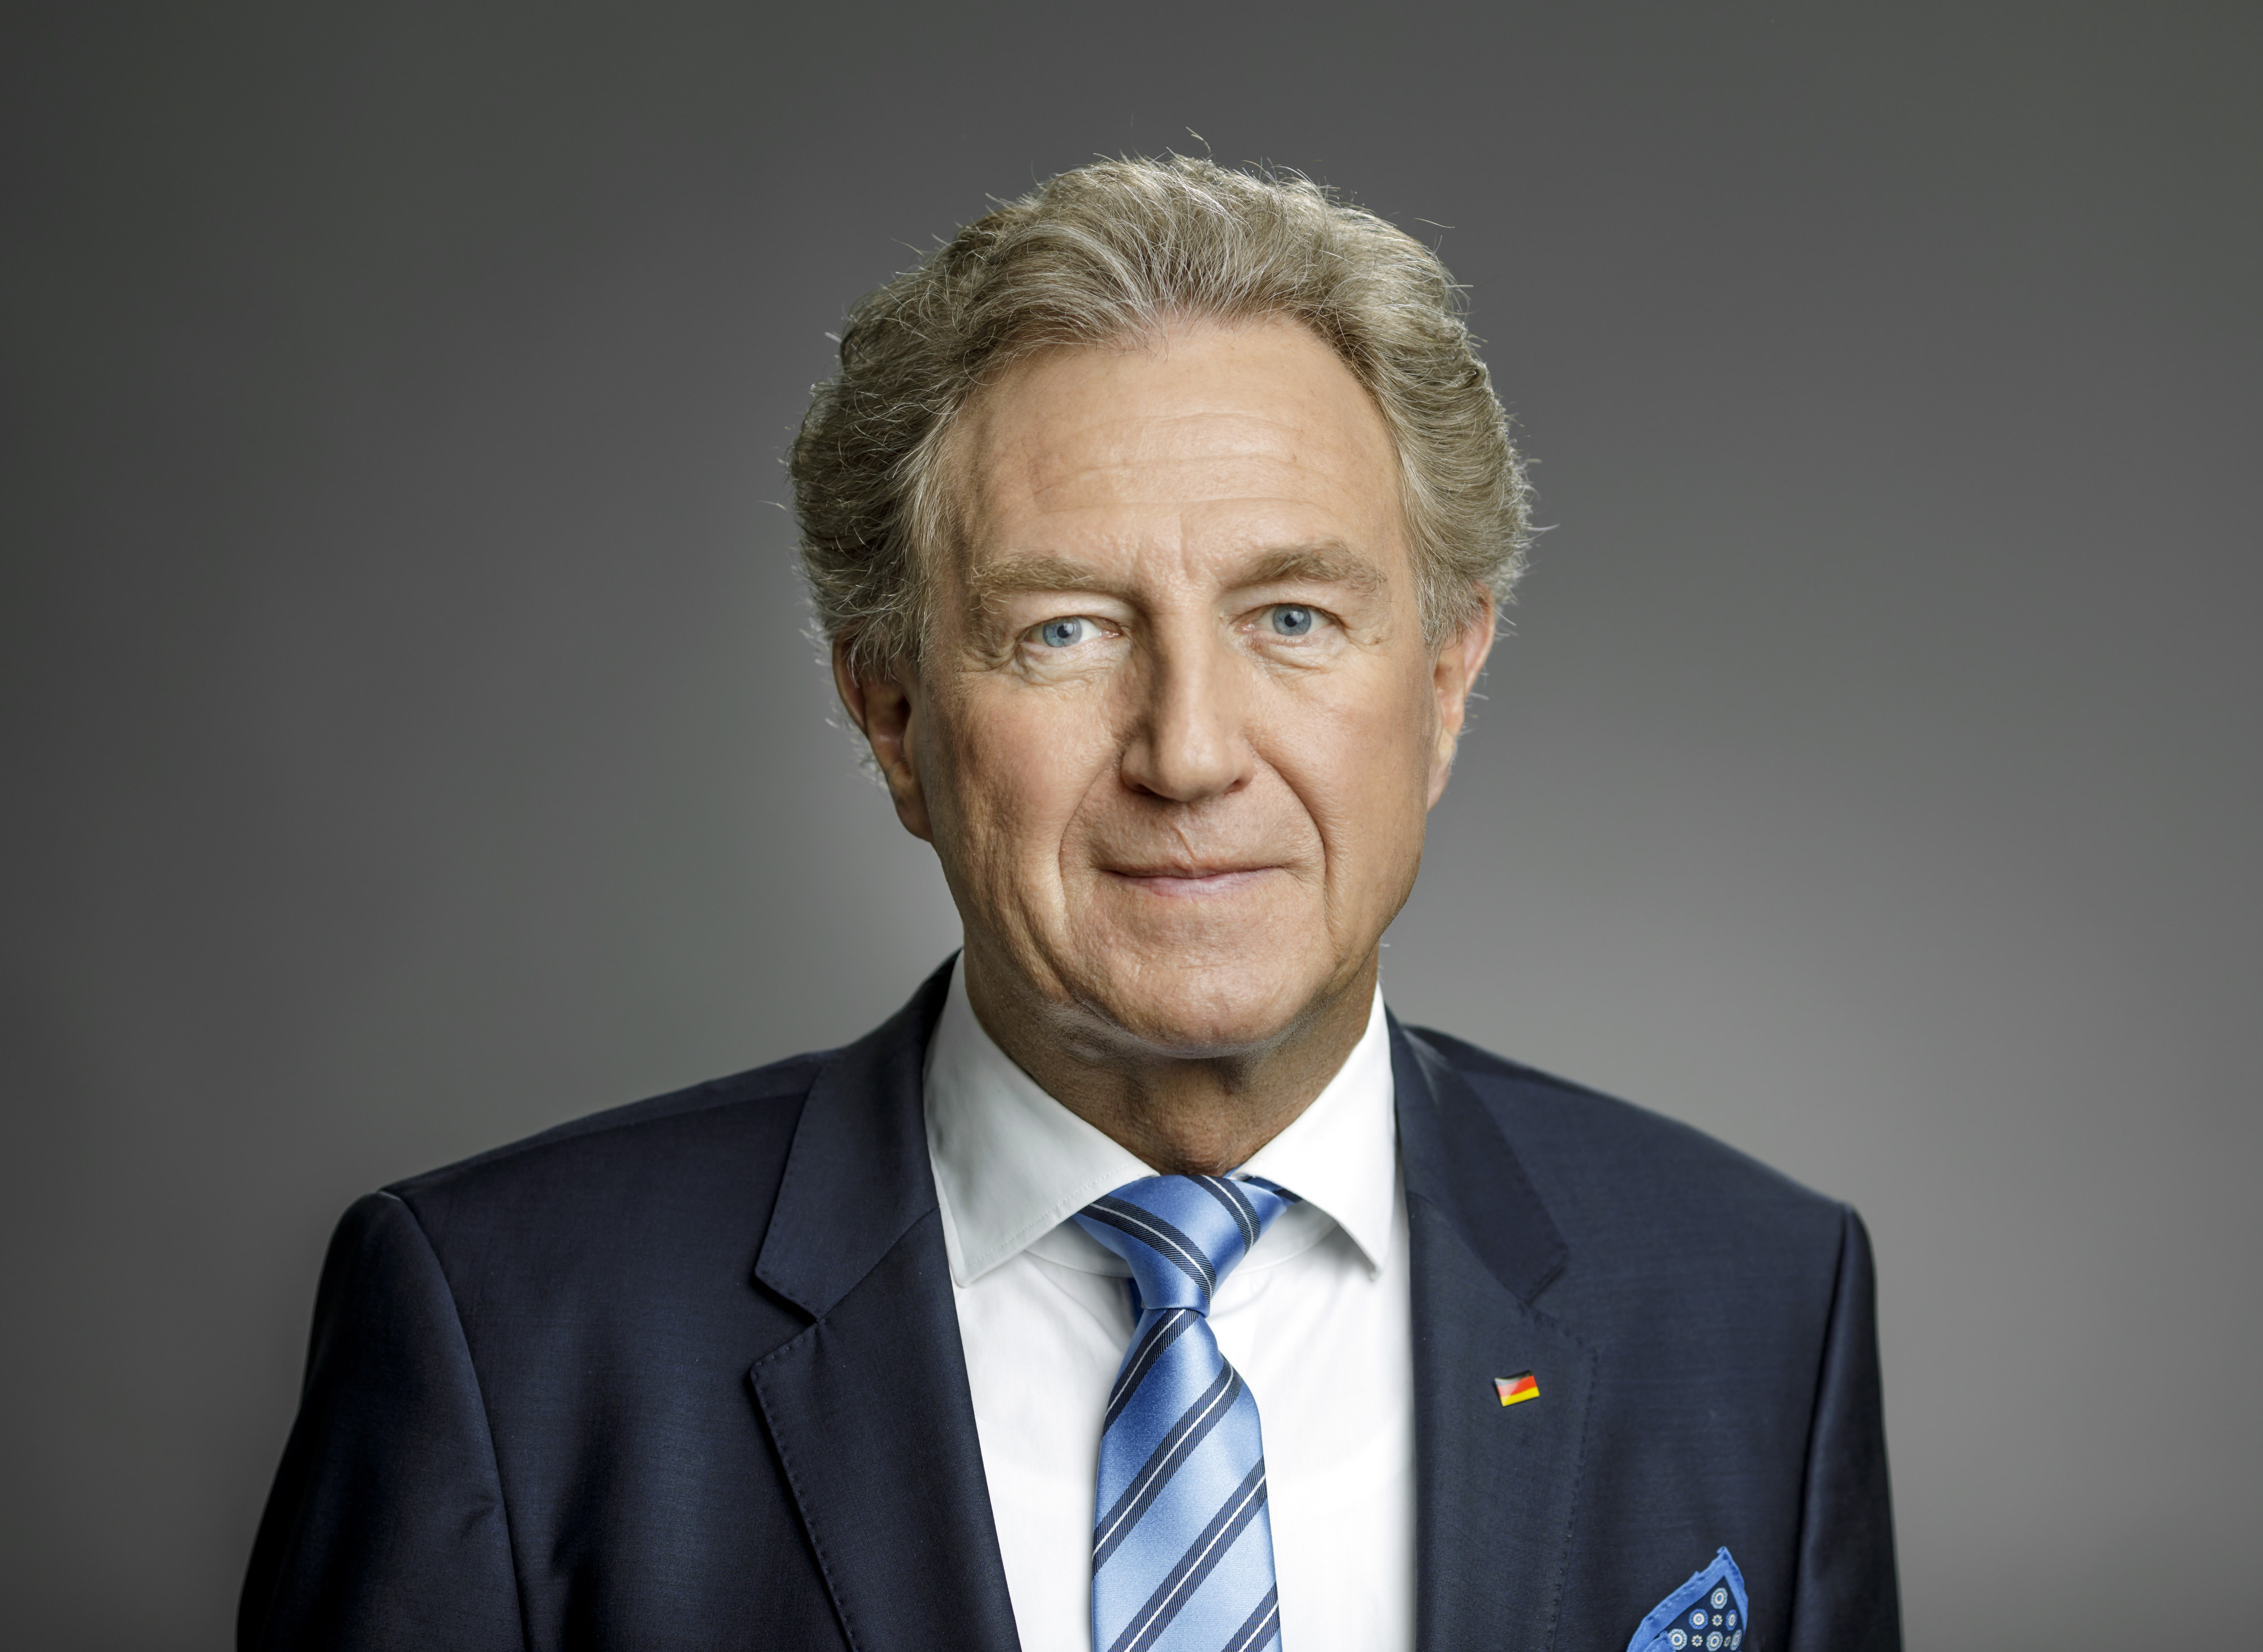 Norbert Barthle, Parlamentarischer Staatssekretär beim Bundesminister für wirtschaftliche Zusammenarbeit und Entwicklung von 2018 bis 2021